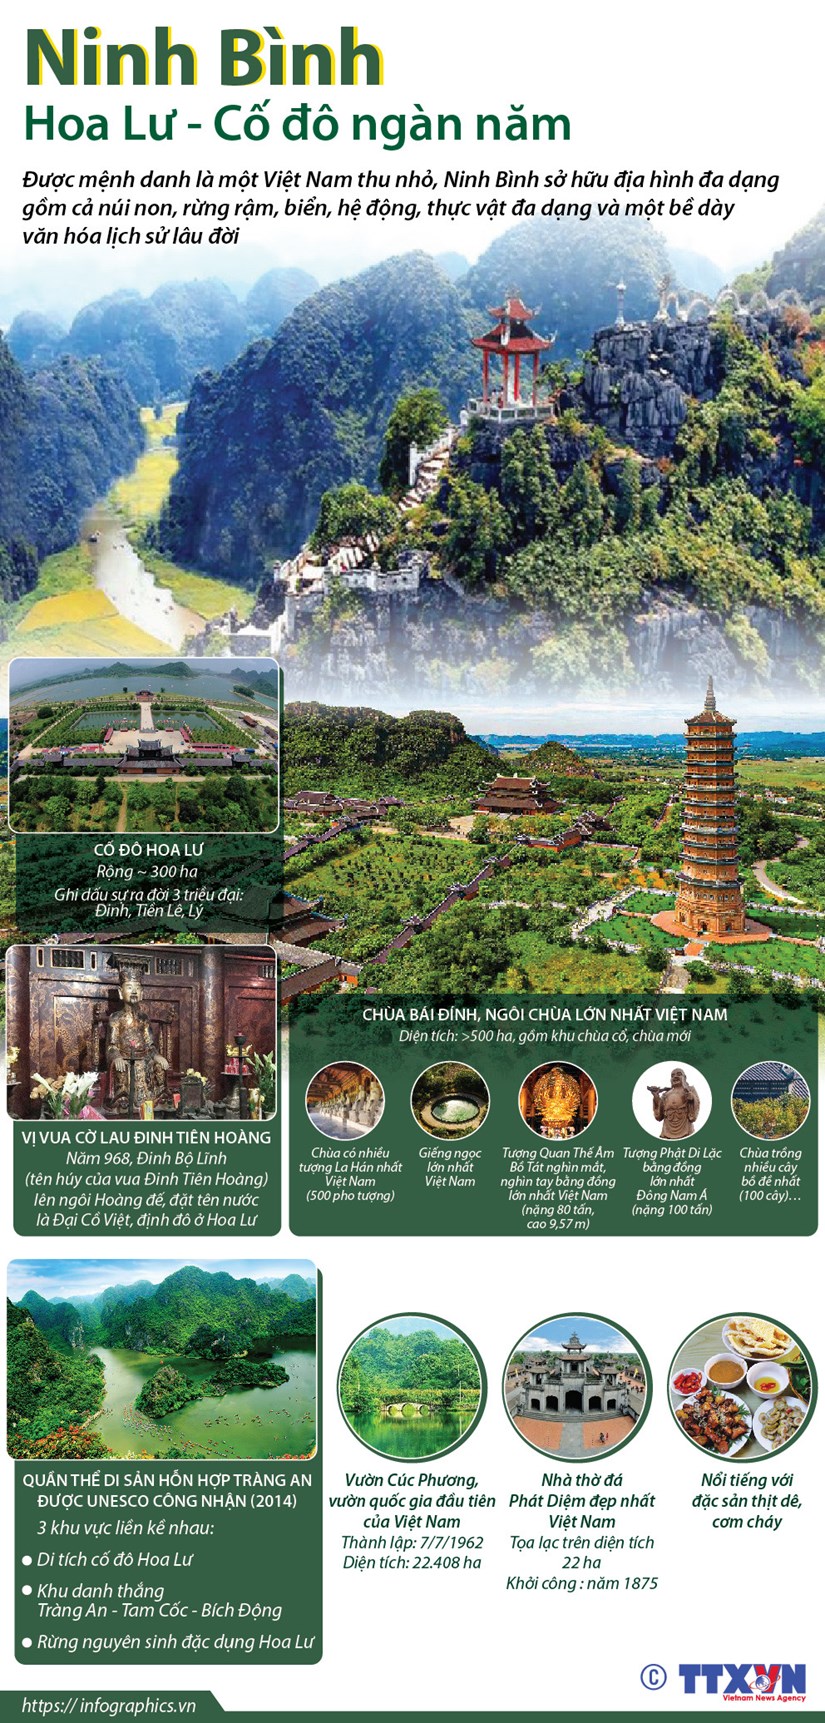 [Infographics] Ninh Binh: Hoa Lu - Co do ngan nam hinh anh 1